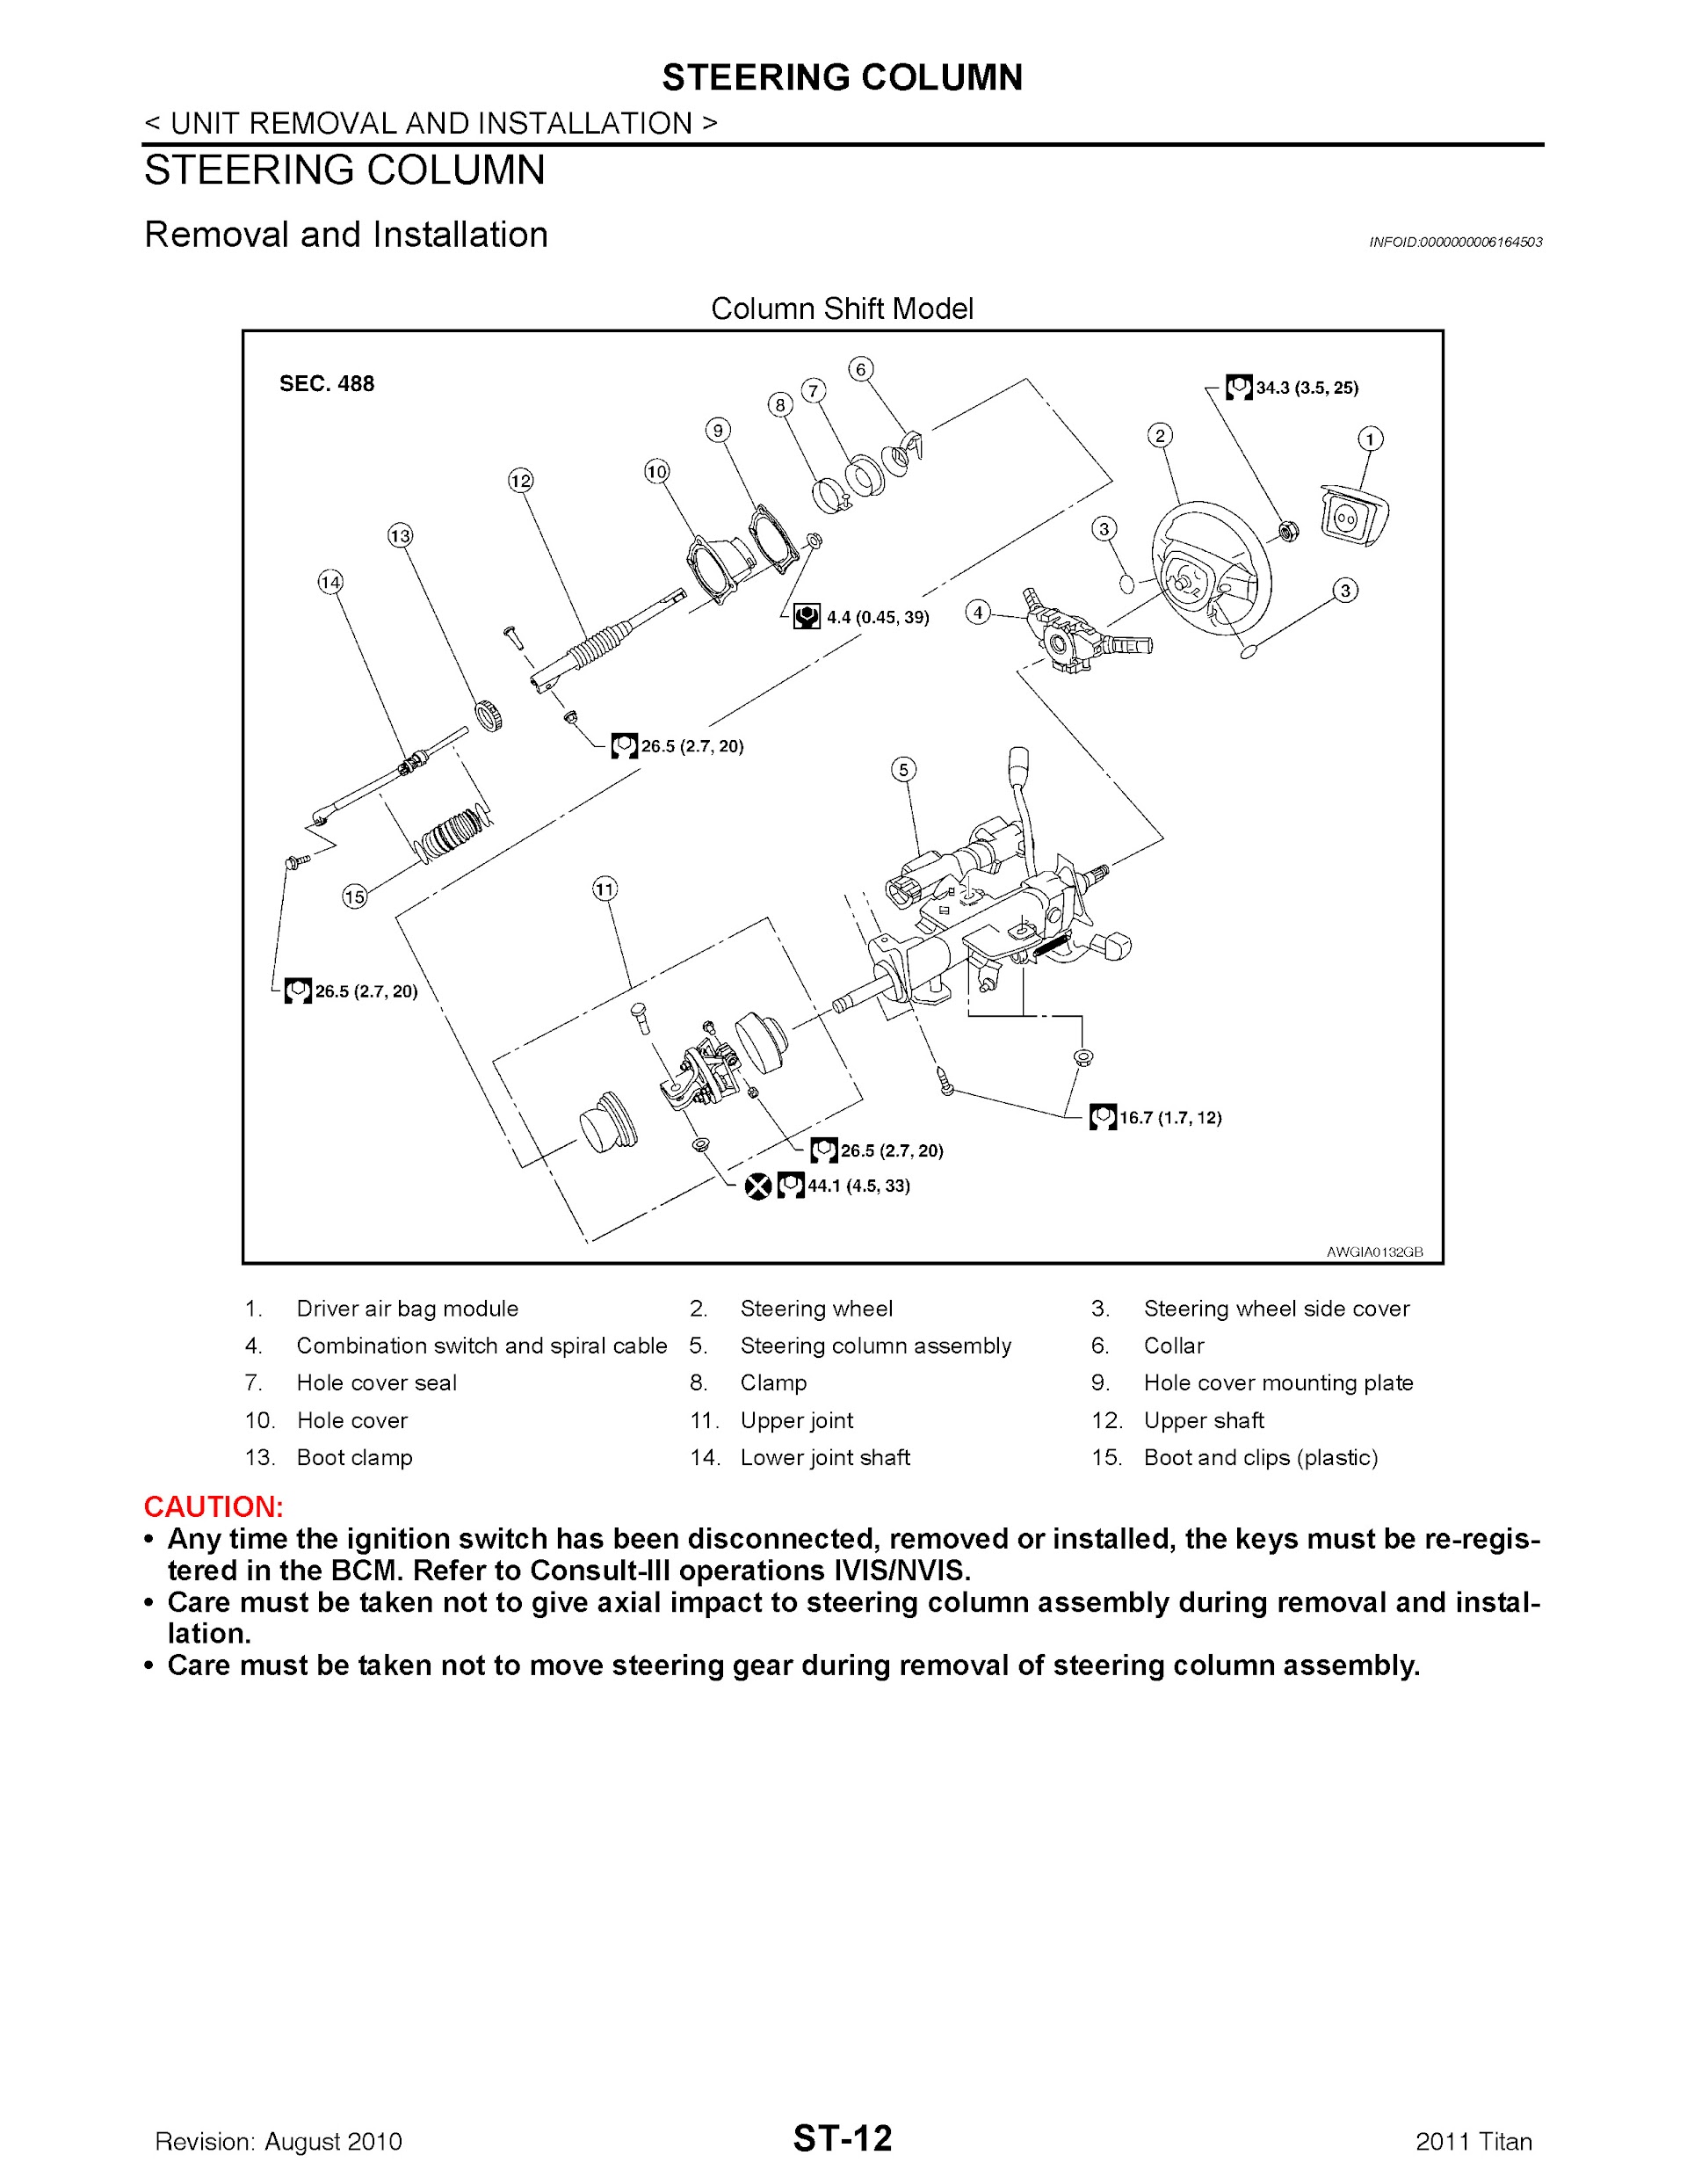 Download 2011 Nissan Titan Repair Manual.